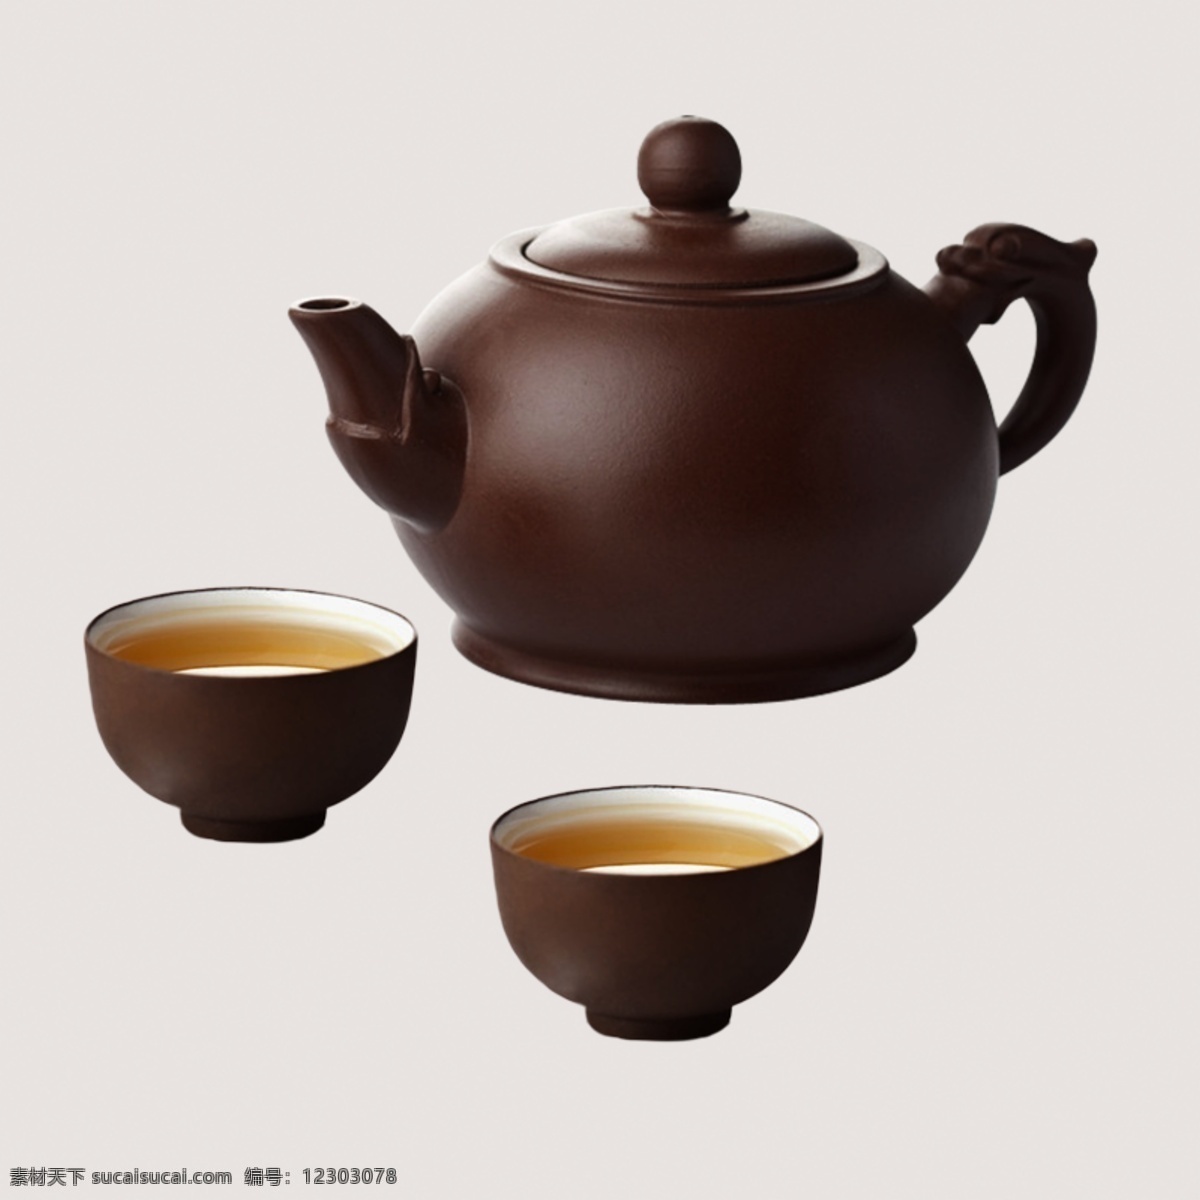 茶具图片 茶具 茶壶 茶杯 茶盏 喝茶用具 文化艺术 传统文化